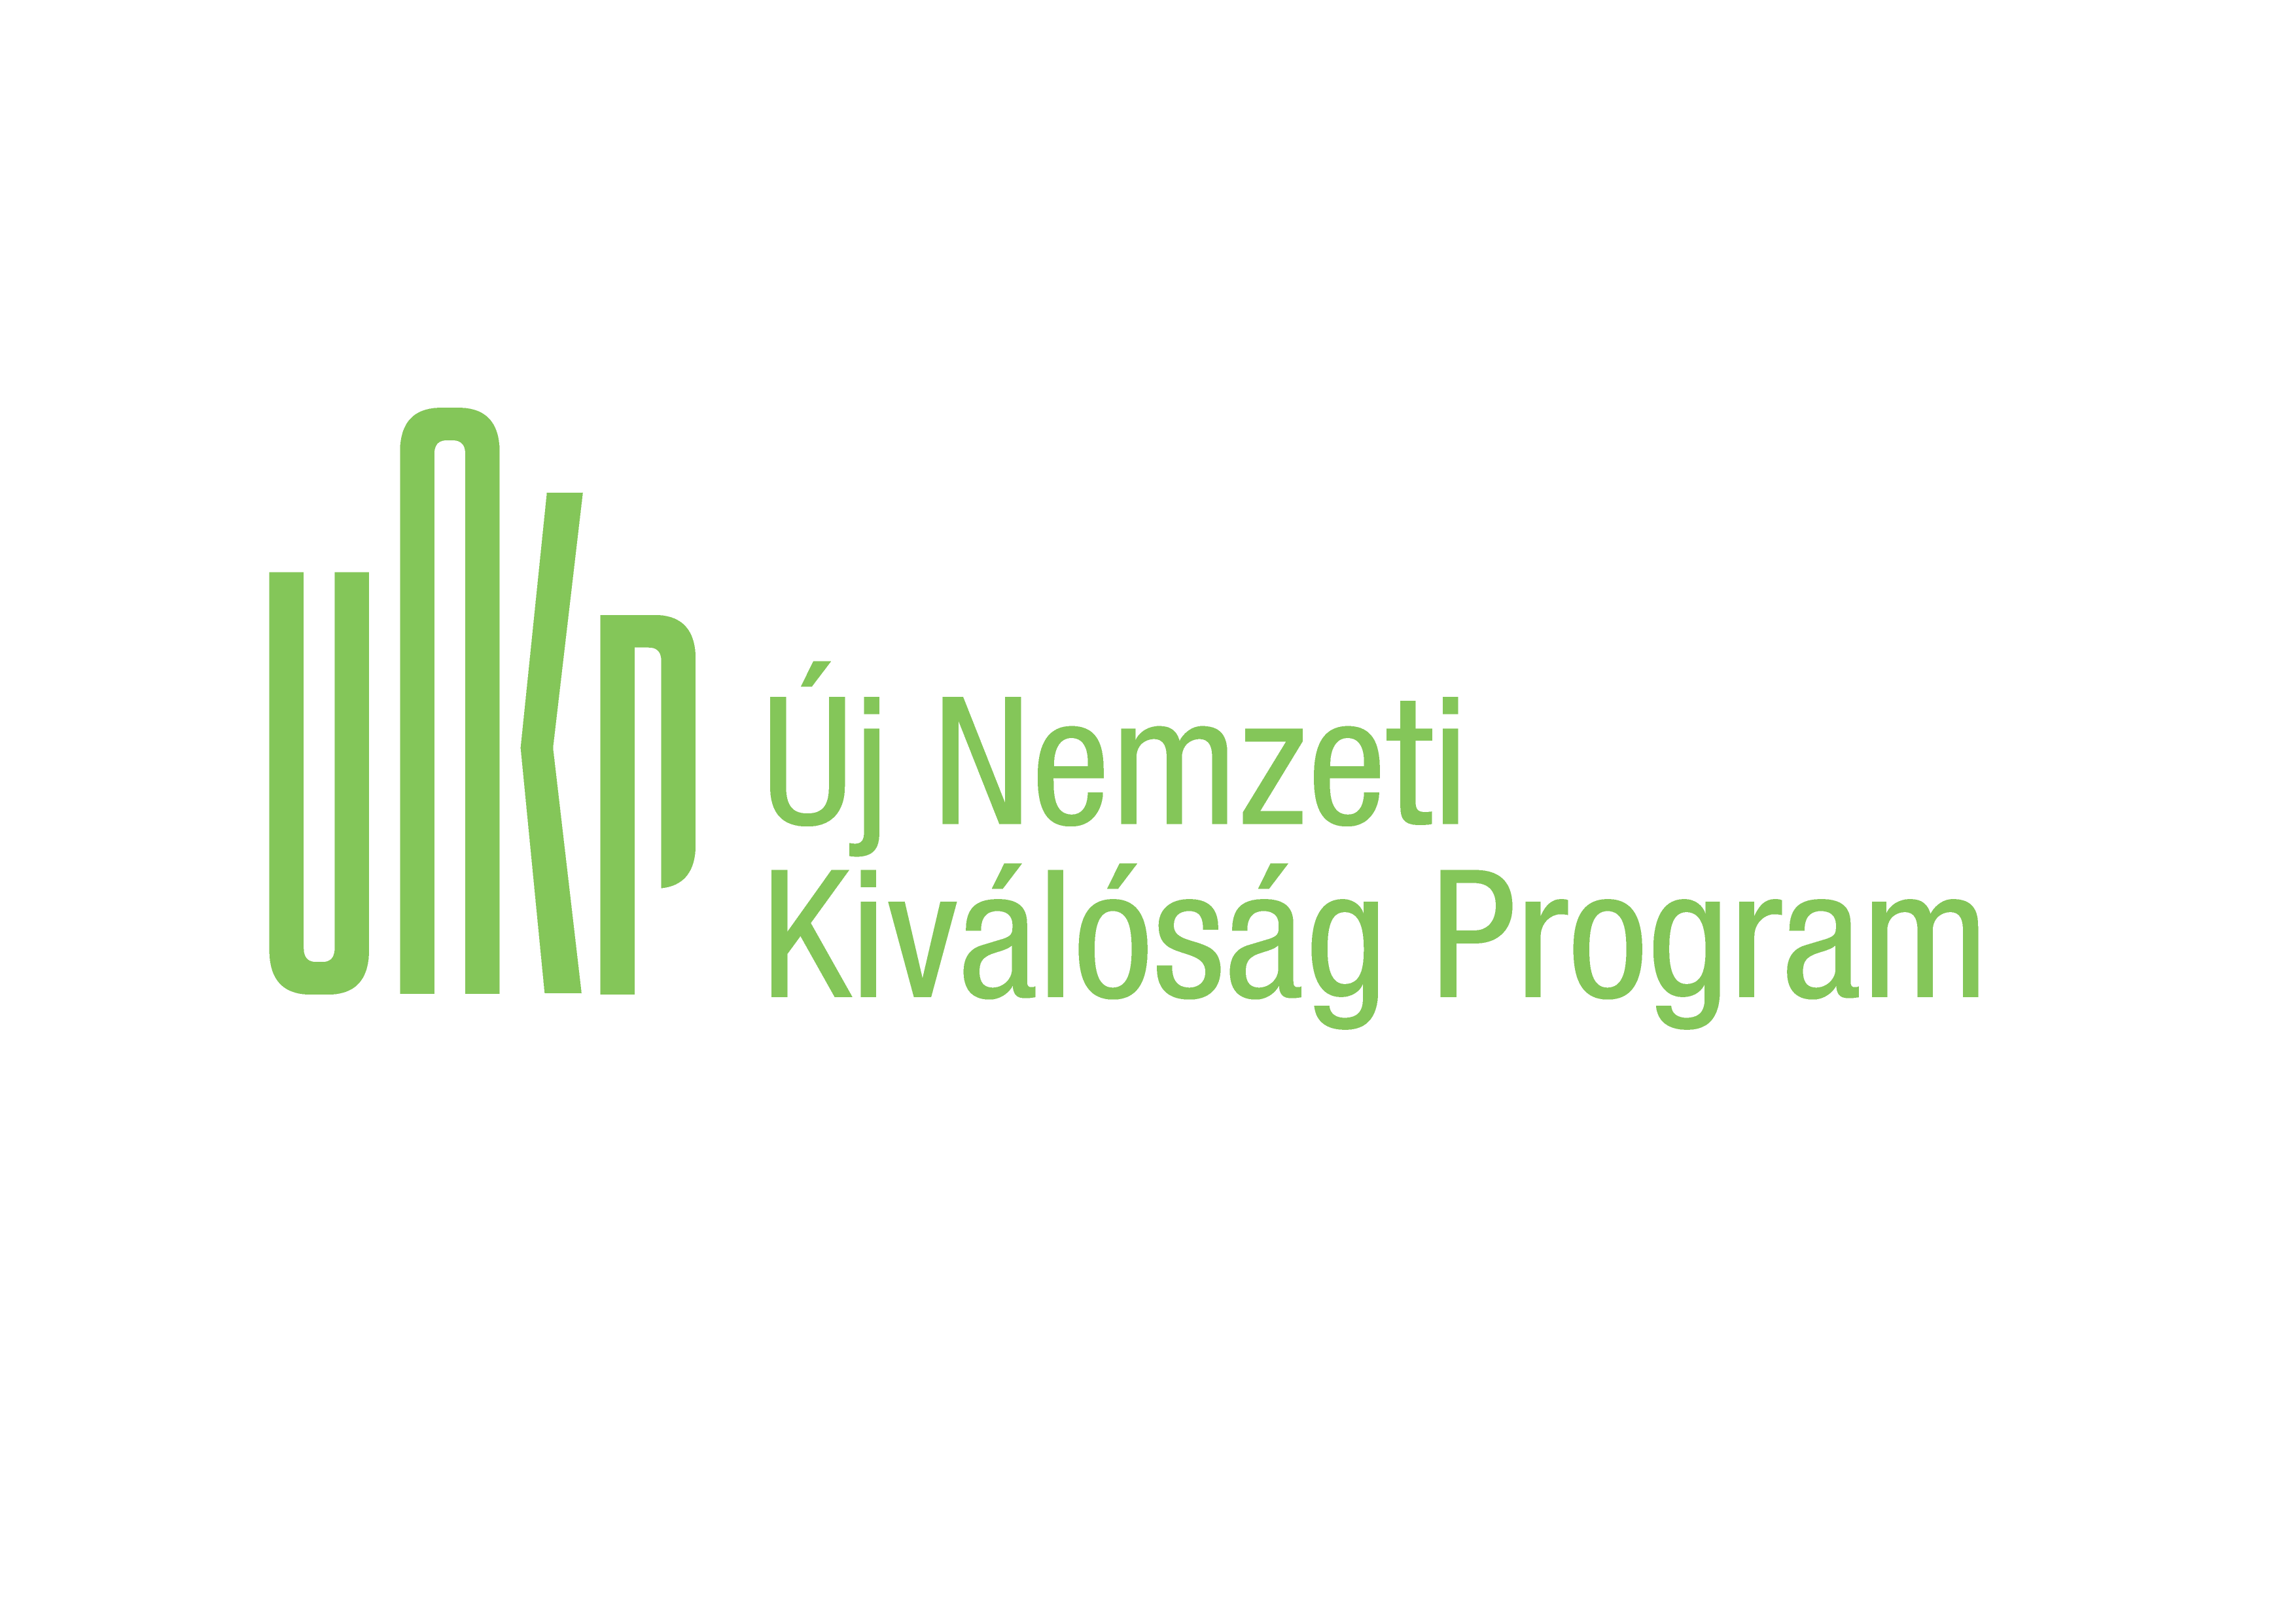 unkp_logo-04.png